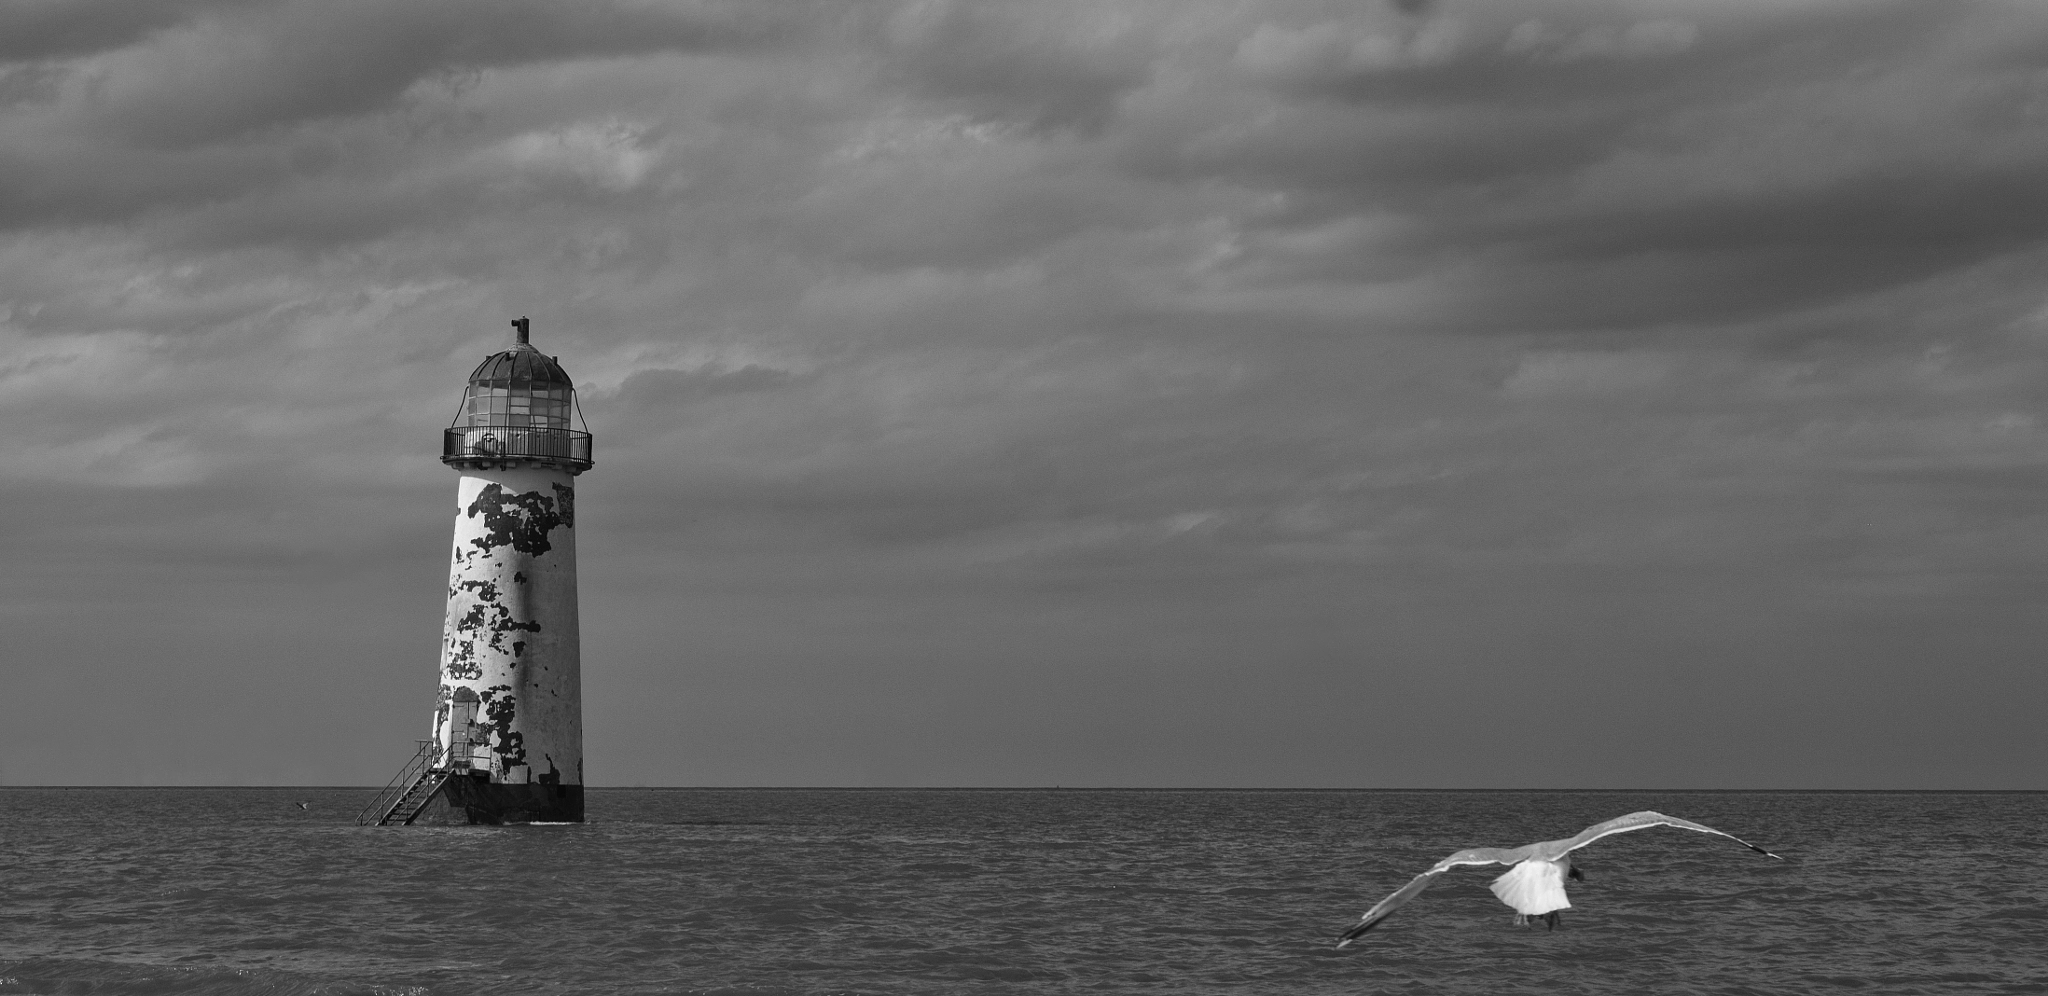 Sony Alpha NEX-C3 + E 50mm F1.8 OSS sample photo. Lighthouse & seagull photography